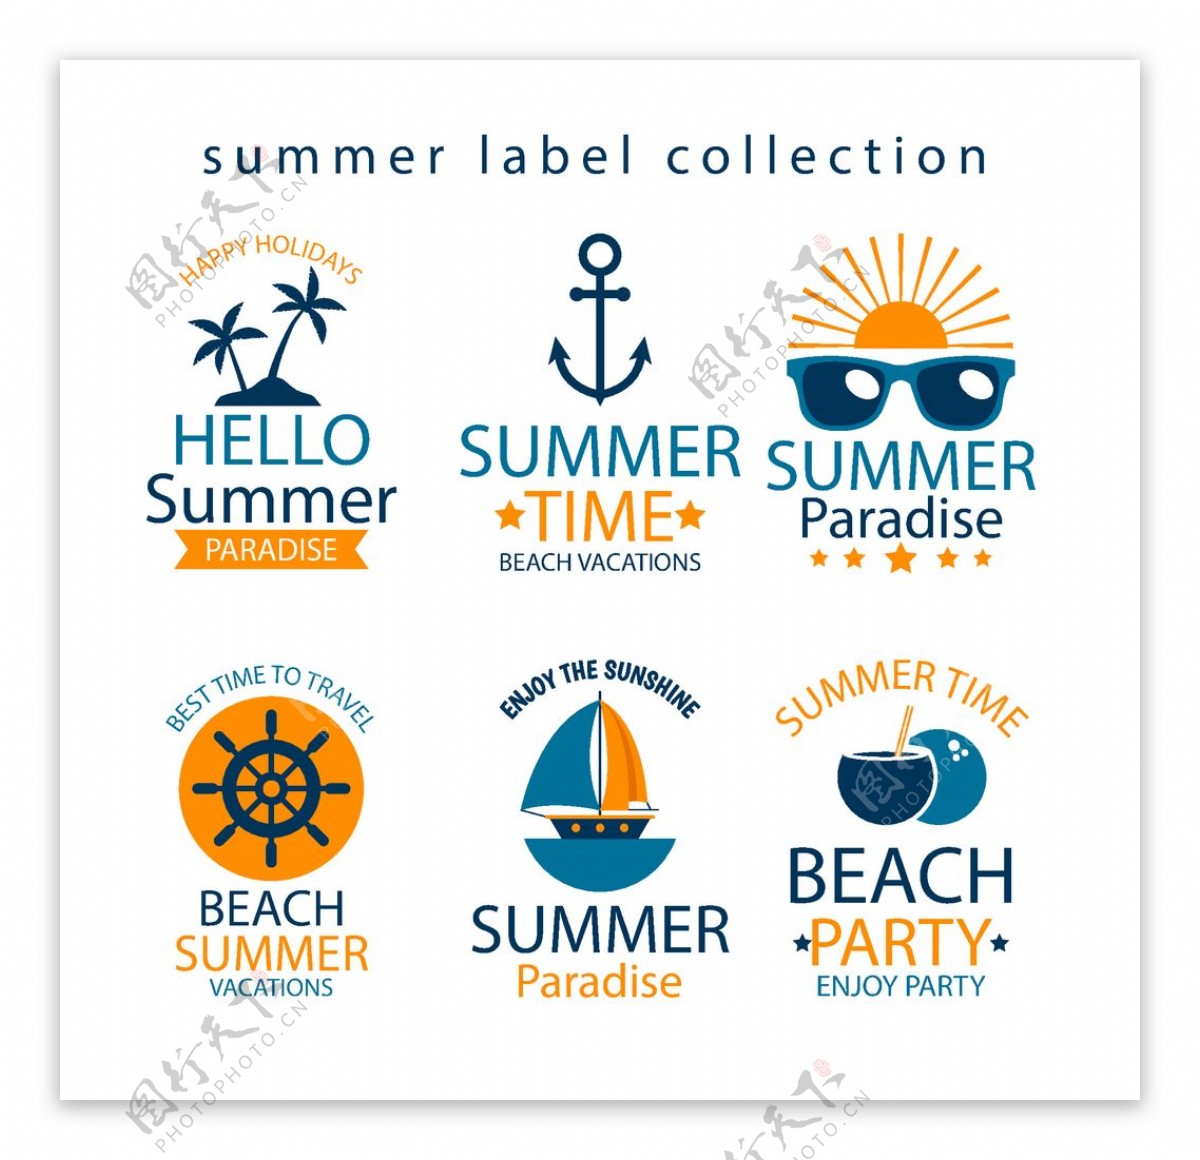 夏季沙滩标签设计矢量